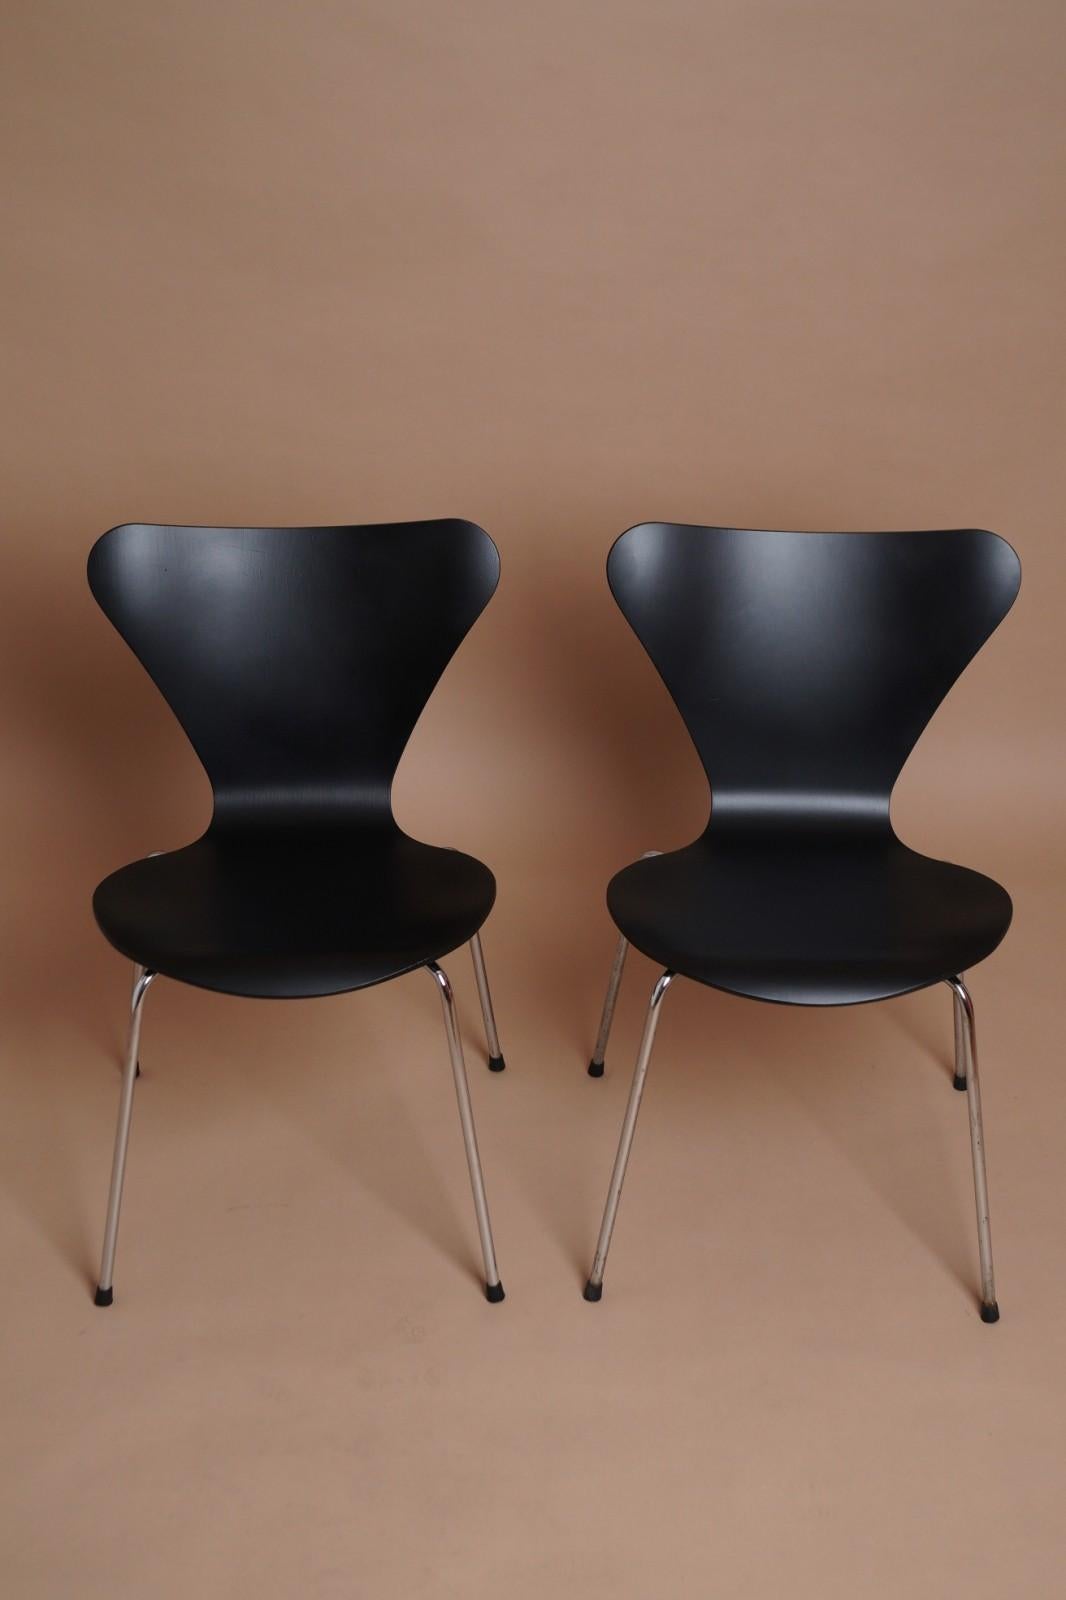 Danish Set of Two Arne Jacobsen Series 7 Chair for Fritz Hansen 1960s For Sale